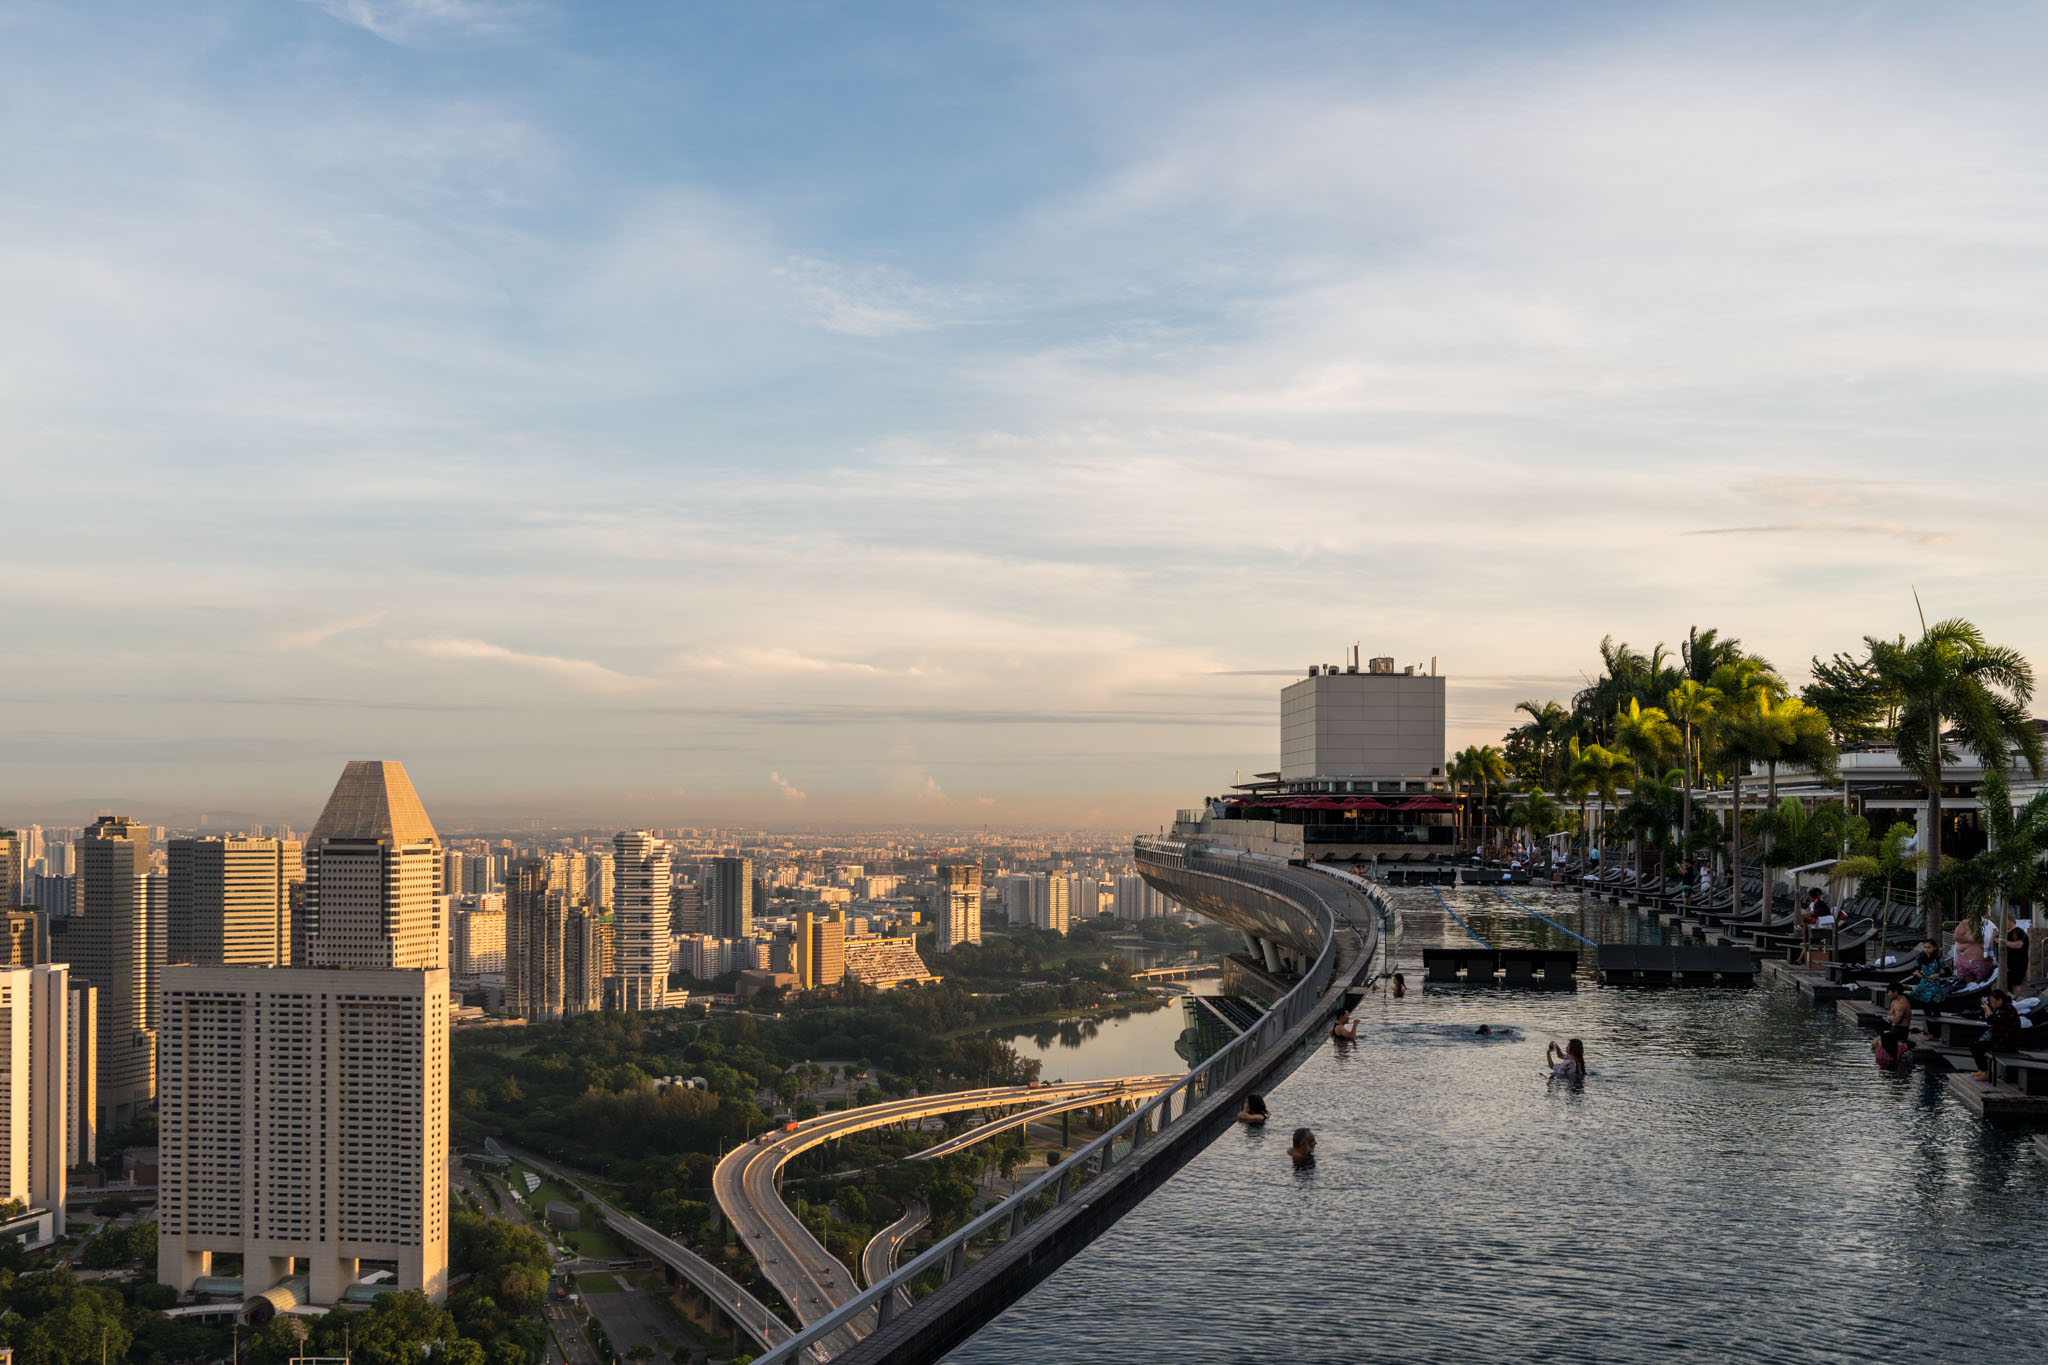 Marina Bay Sands SkyPark, Singapore, Asia – Park Review